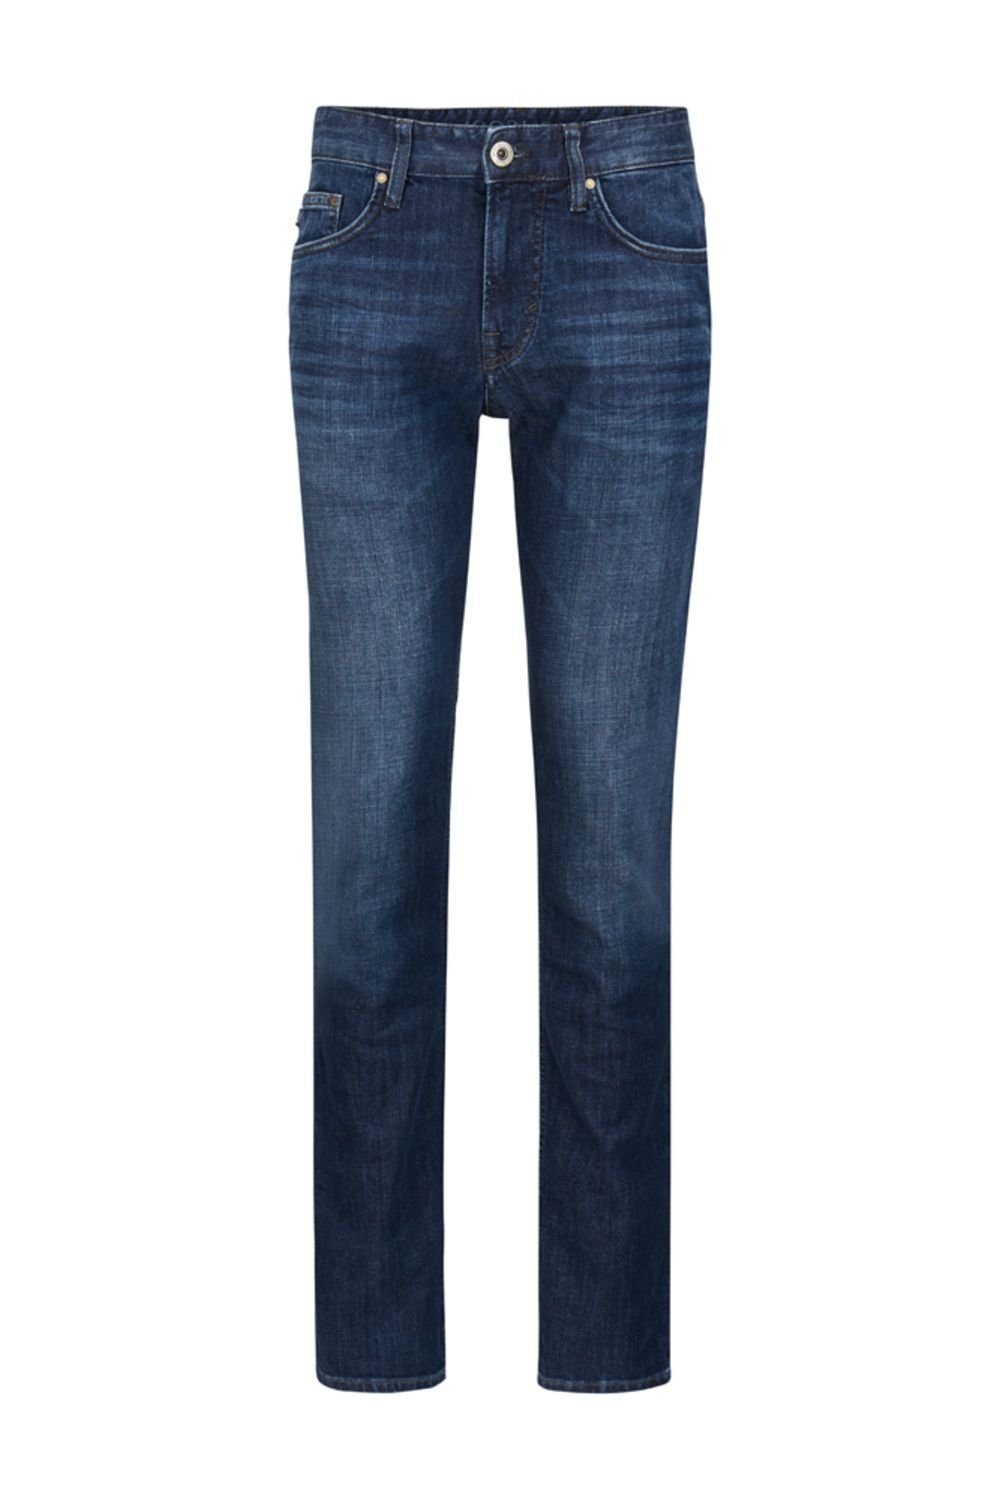 Joop! Regular-fit-Jeans »Herren Denim Jeans Mitch Dark Blue 30002375 02  415« online kaufen | OTTO